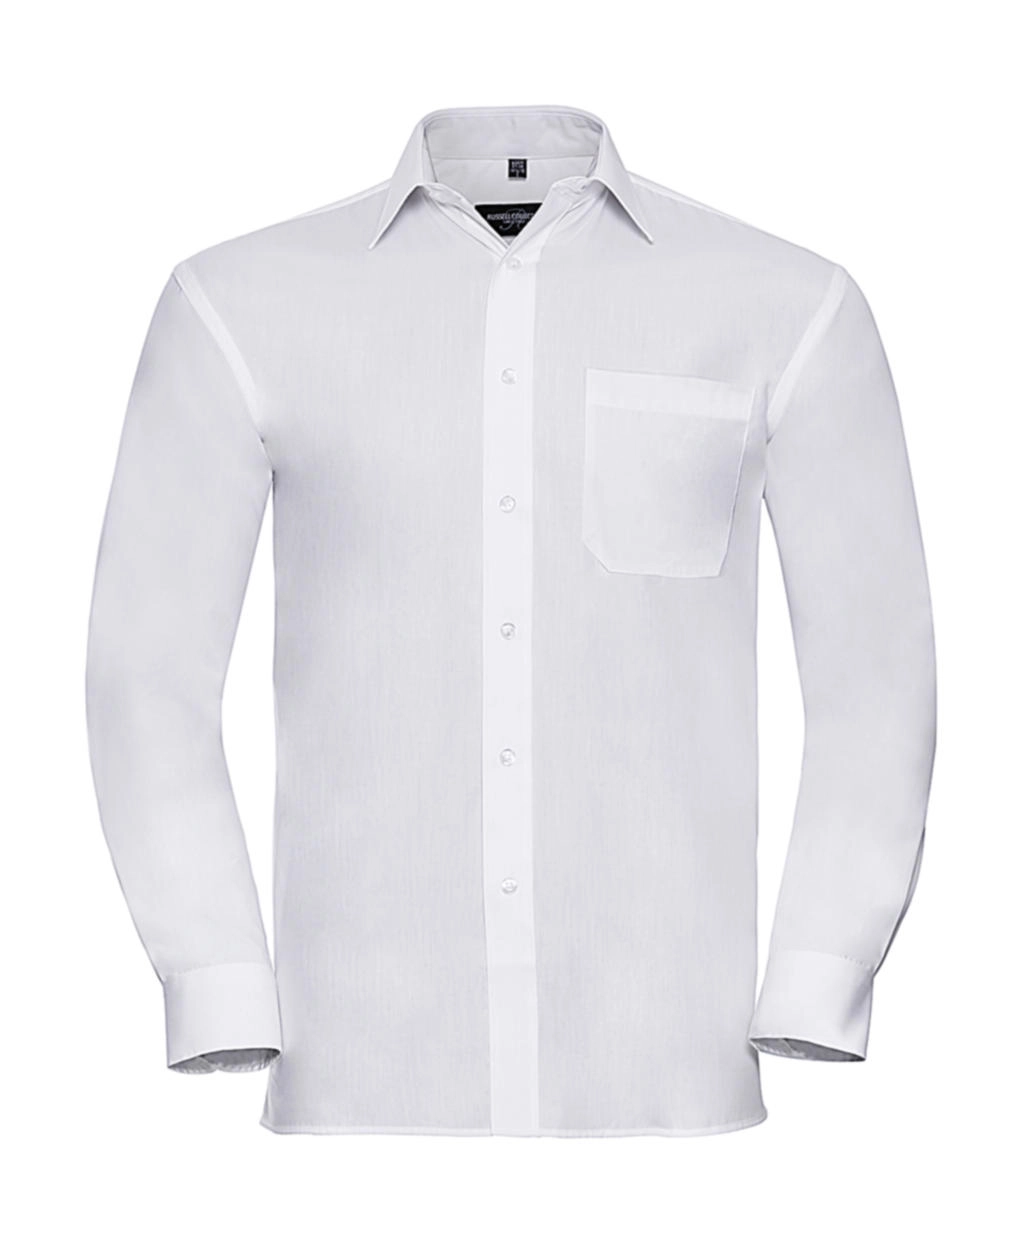 Cotton Poplin Shirt LS zum Besticken und Bedrucken in der Farbe White mit Ihren Logo, Schriftzug oder Motiv.